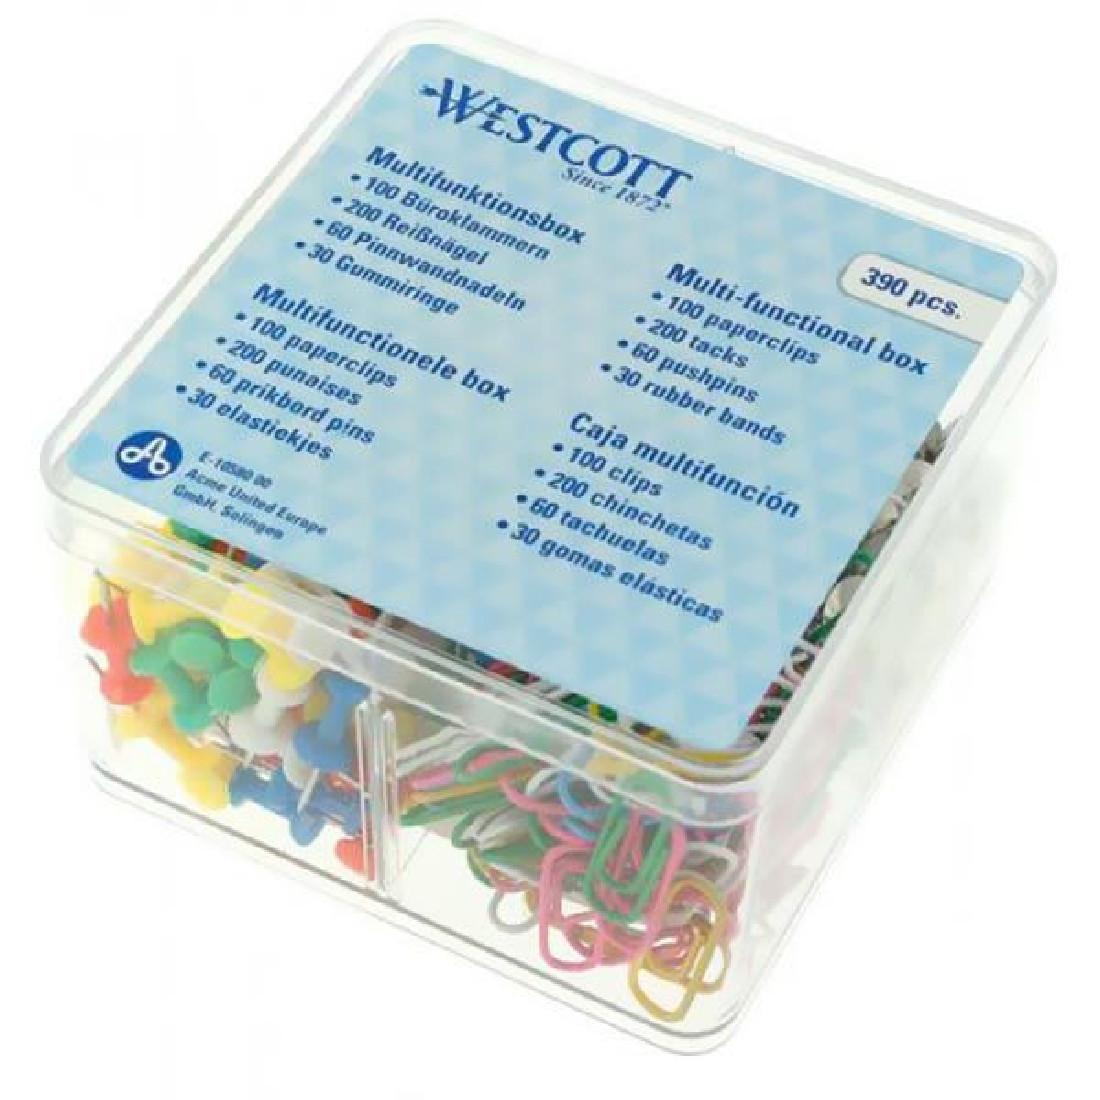 Κουτί Πλαστικό με Πινέζες+Λάστιχα+Συνδετήρες 390τμχ e-10580 Westcott